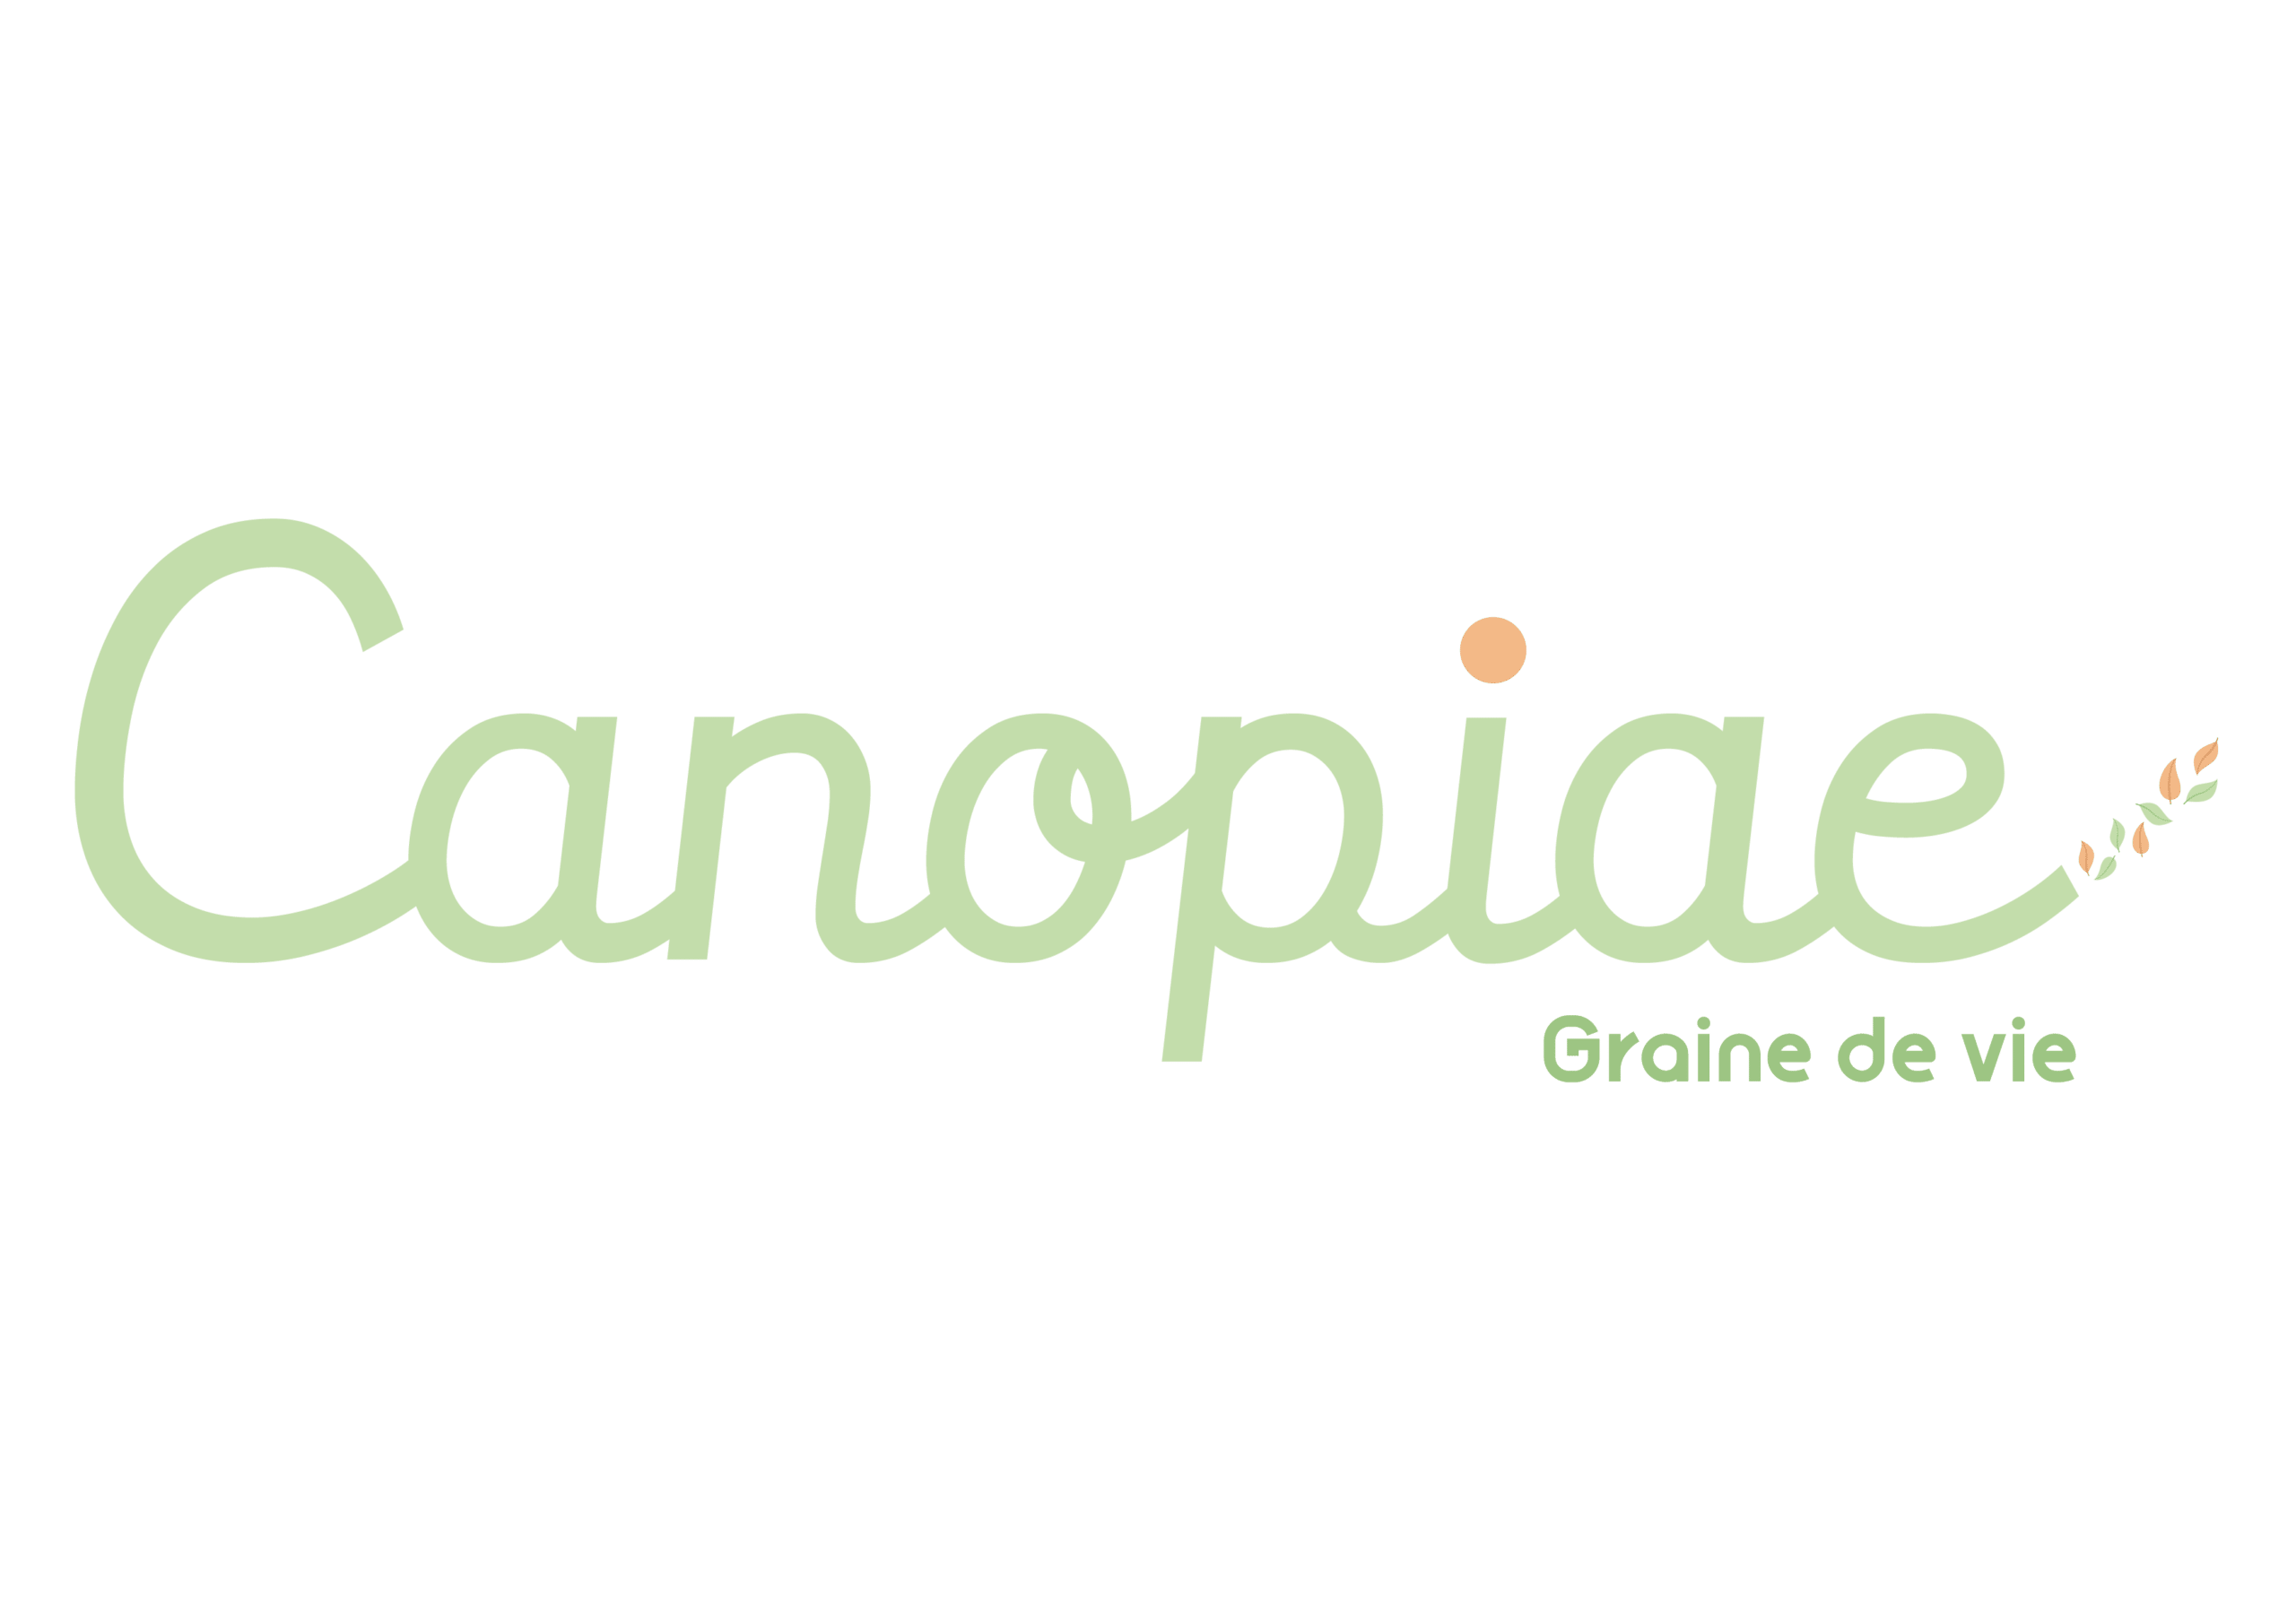 logo Canopiae